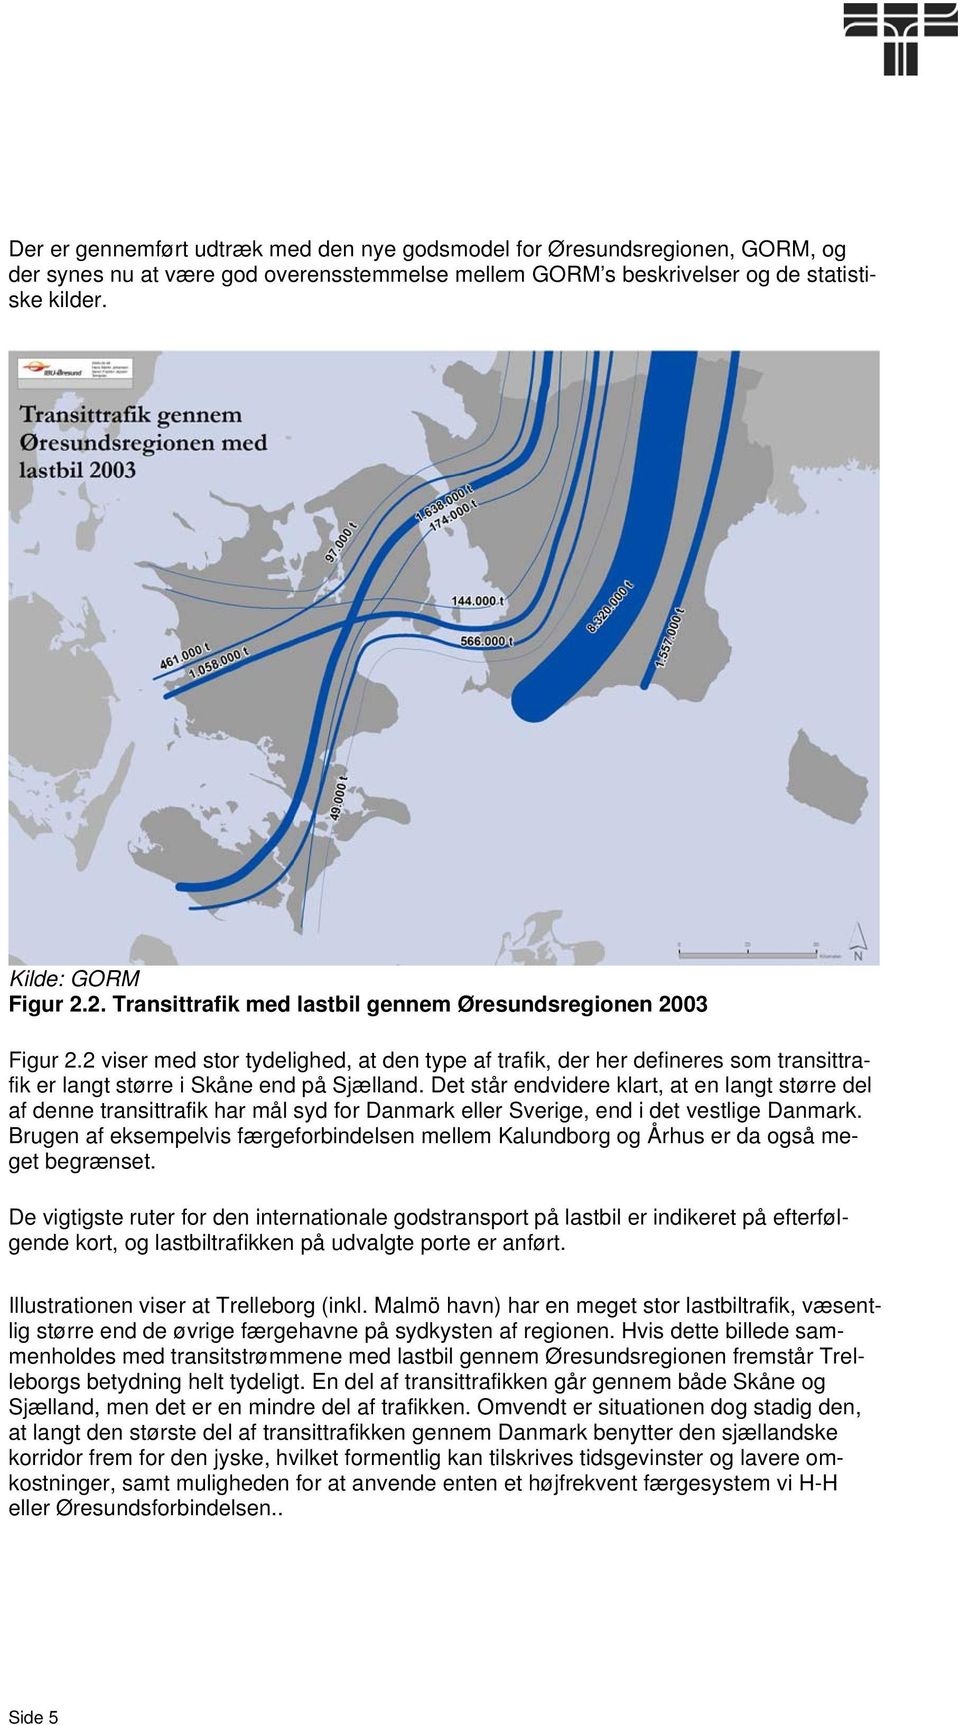 Det står endvidere klart, at en langt større del af denne transittrafik har mål syd for Danmark eller Sverige, end i det vestlige Danmark.